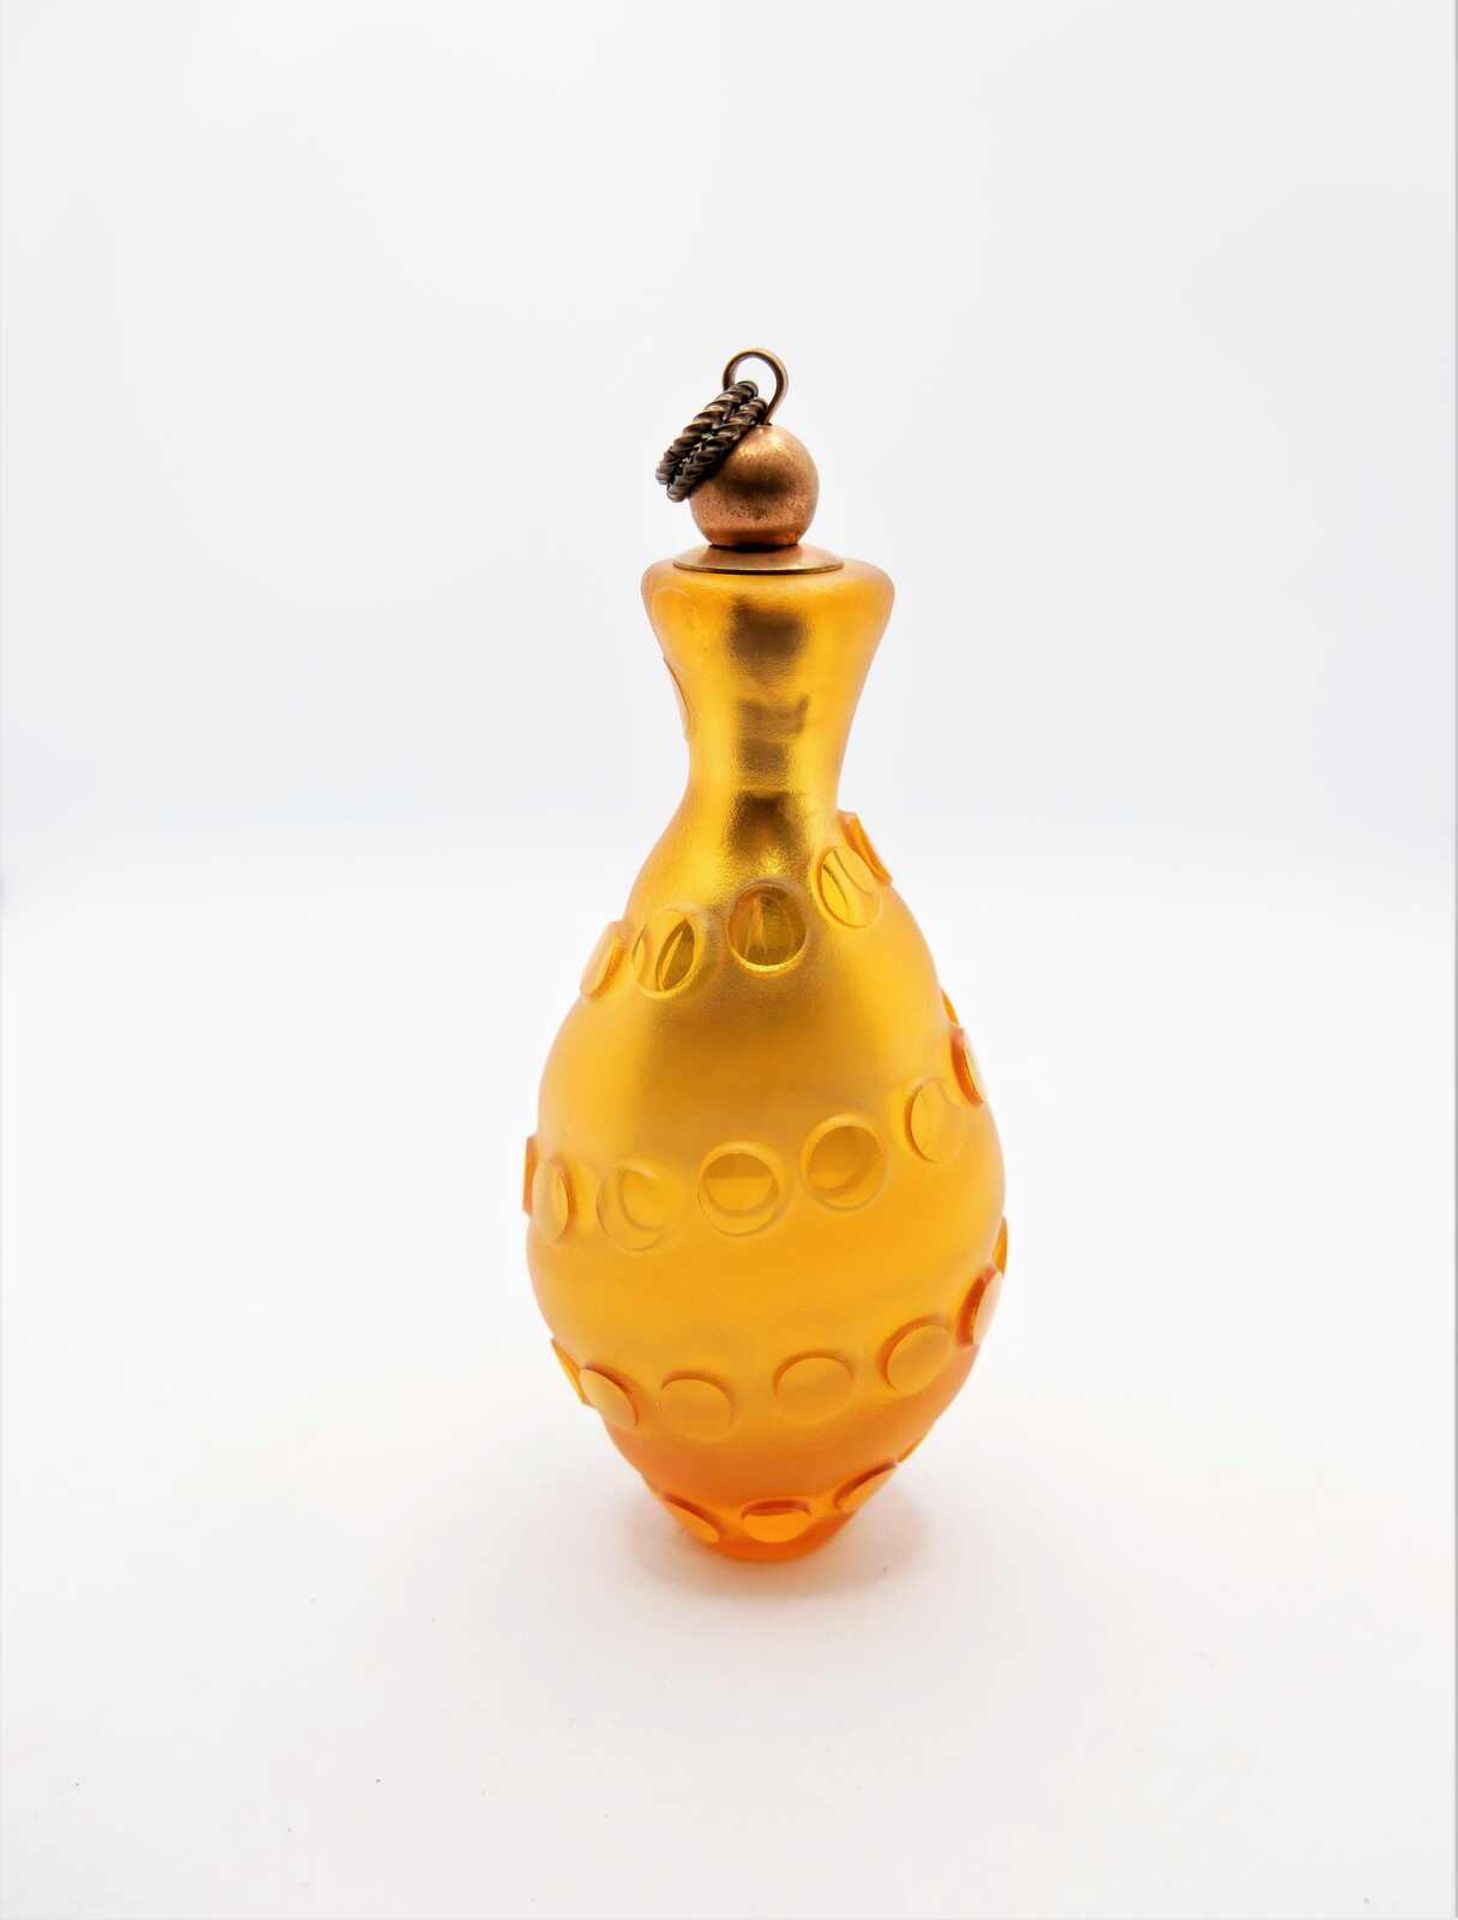 Schnupftabakflasche Glas aus Sammlung, Bixl, gold, mit Stöpsel. Bayrischer Wald. Höhe ca. 14,5 cm